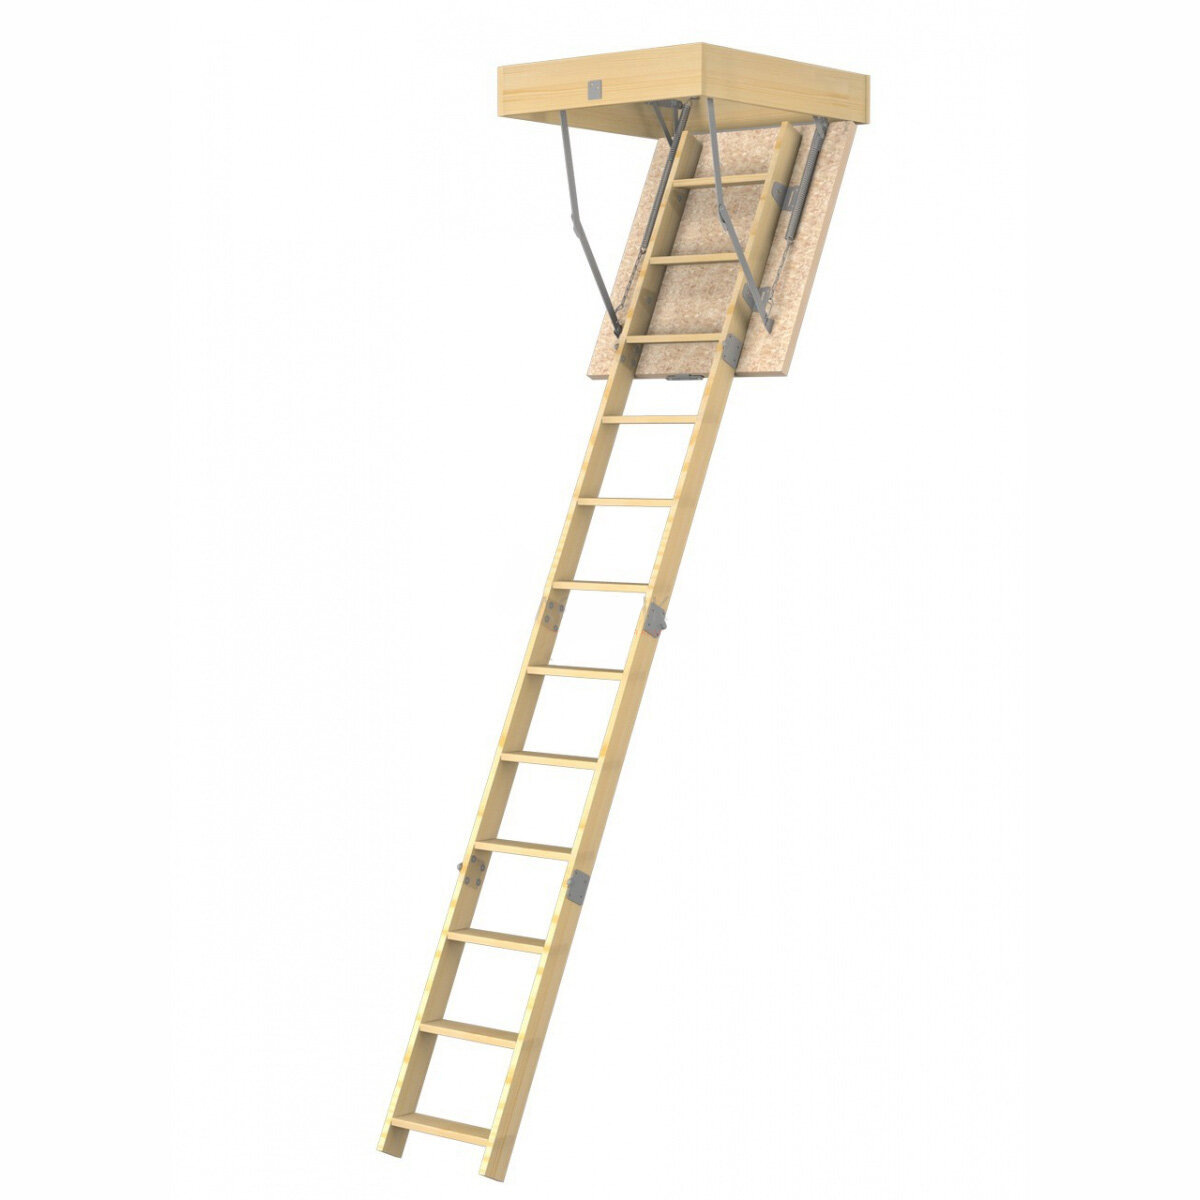 Деревянная чердачная лестница ЧЛ-11 600х875